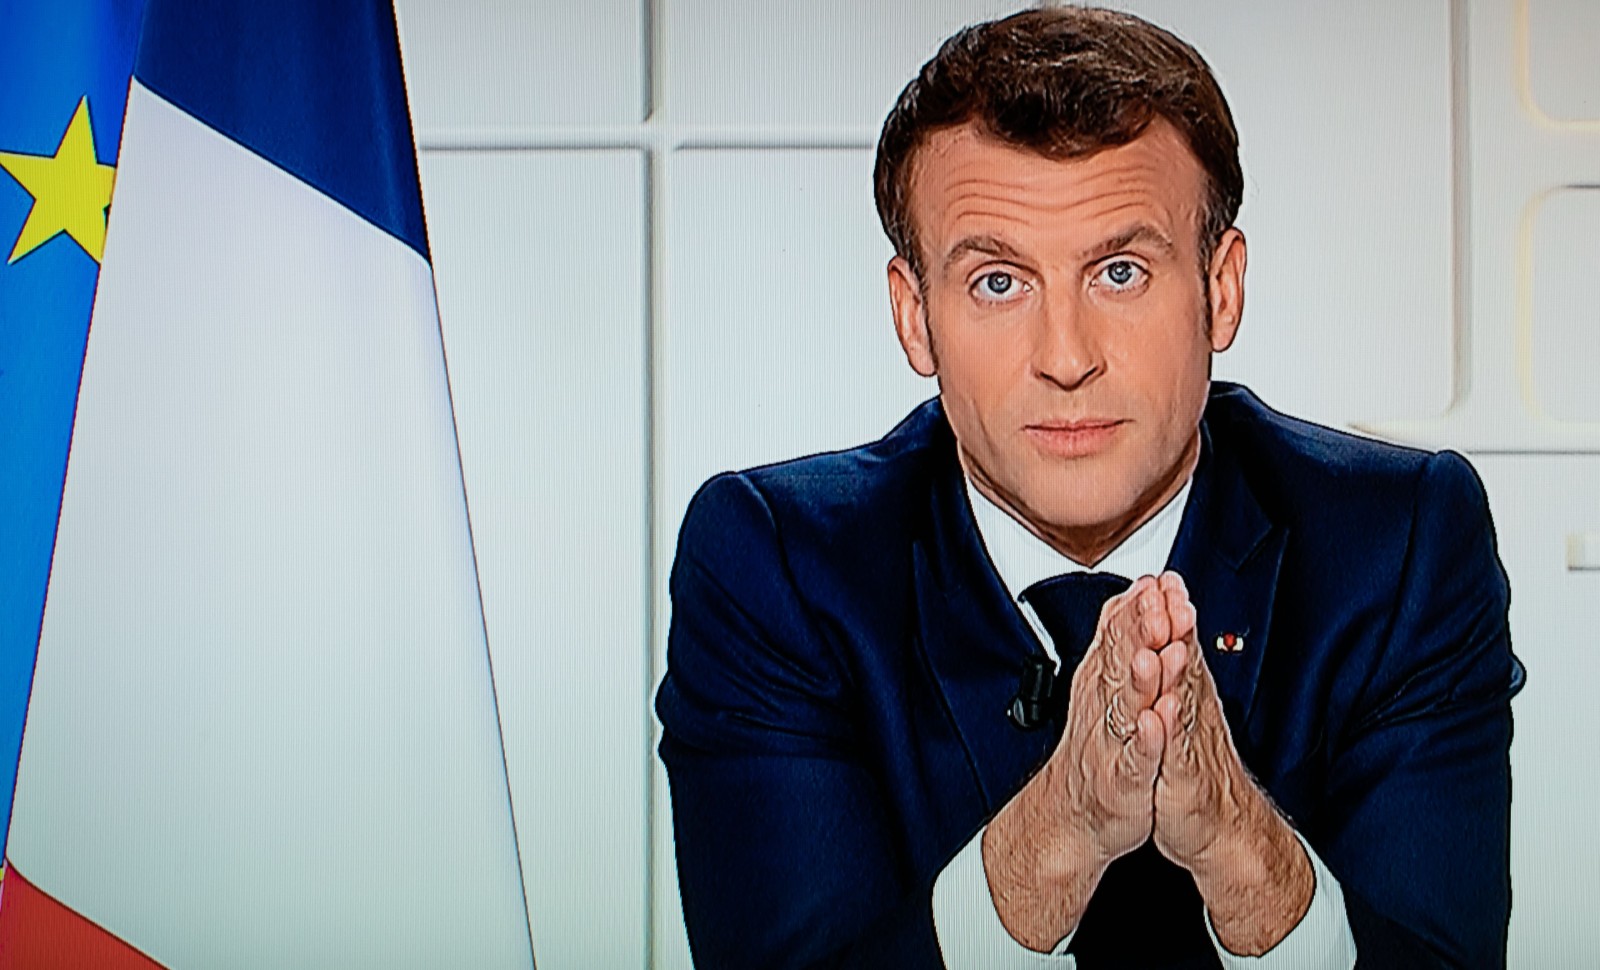 Le président Macron s'adresse aux Français à la télévision le 31 mars 2021, et annonce un troisième confinement pour lutter contre le Covid-19 © ROMUALD MEIGNEUX/SIPA Numéro de reportage : 01012419_000018